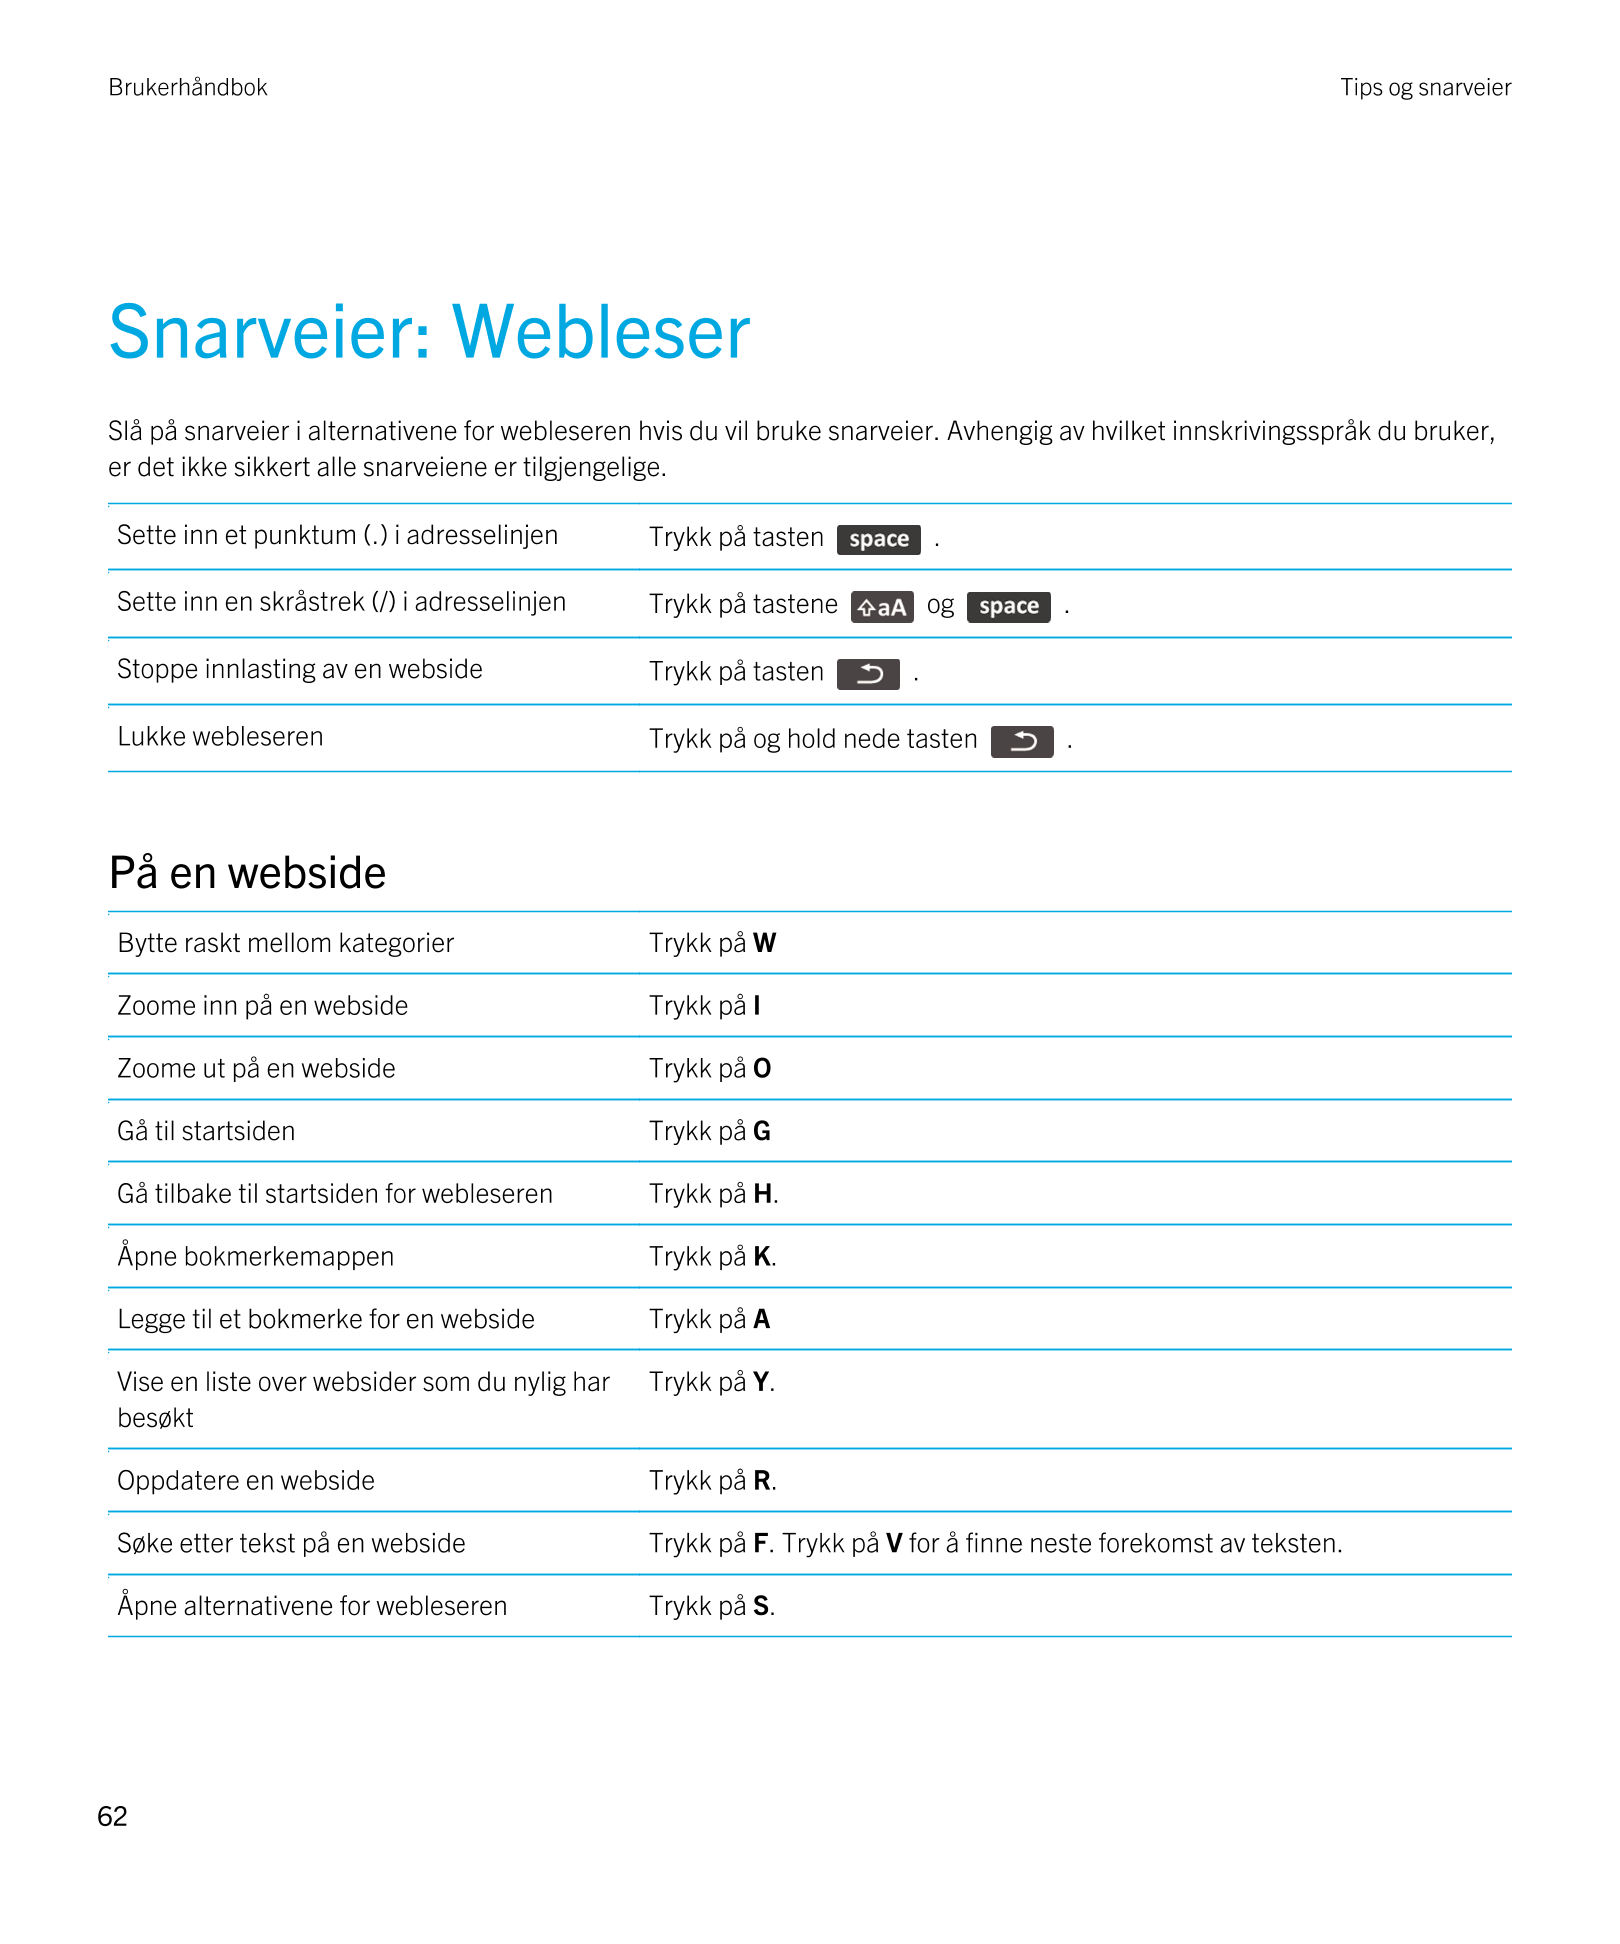 Brukerhåndbok Tips og snarveier
Snarveier: Webleser
Slå på snarveier i alternativene for webleseren hvis du vil bruke snarveier.